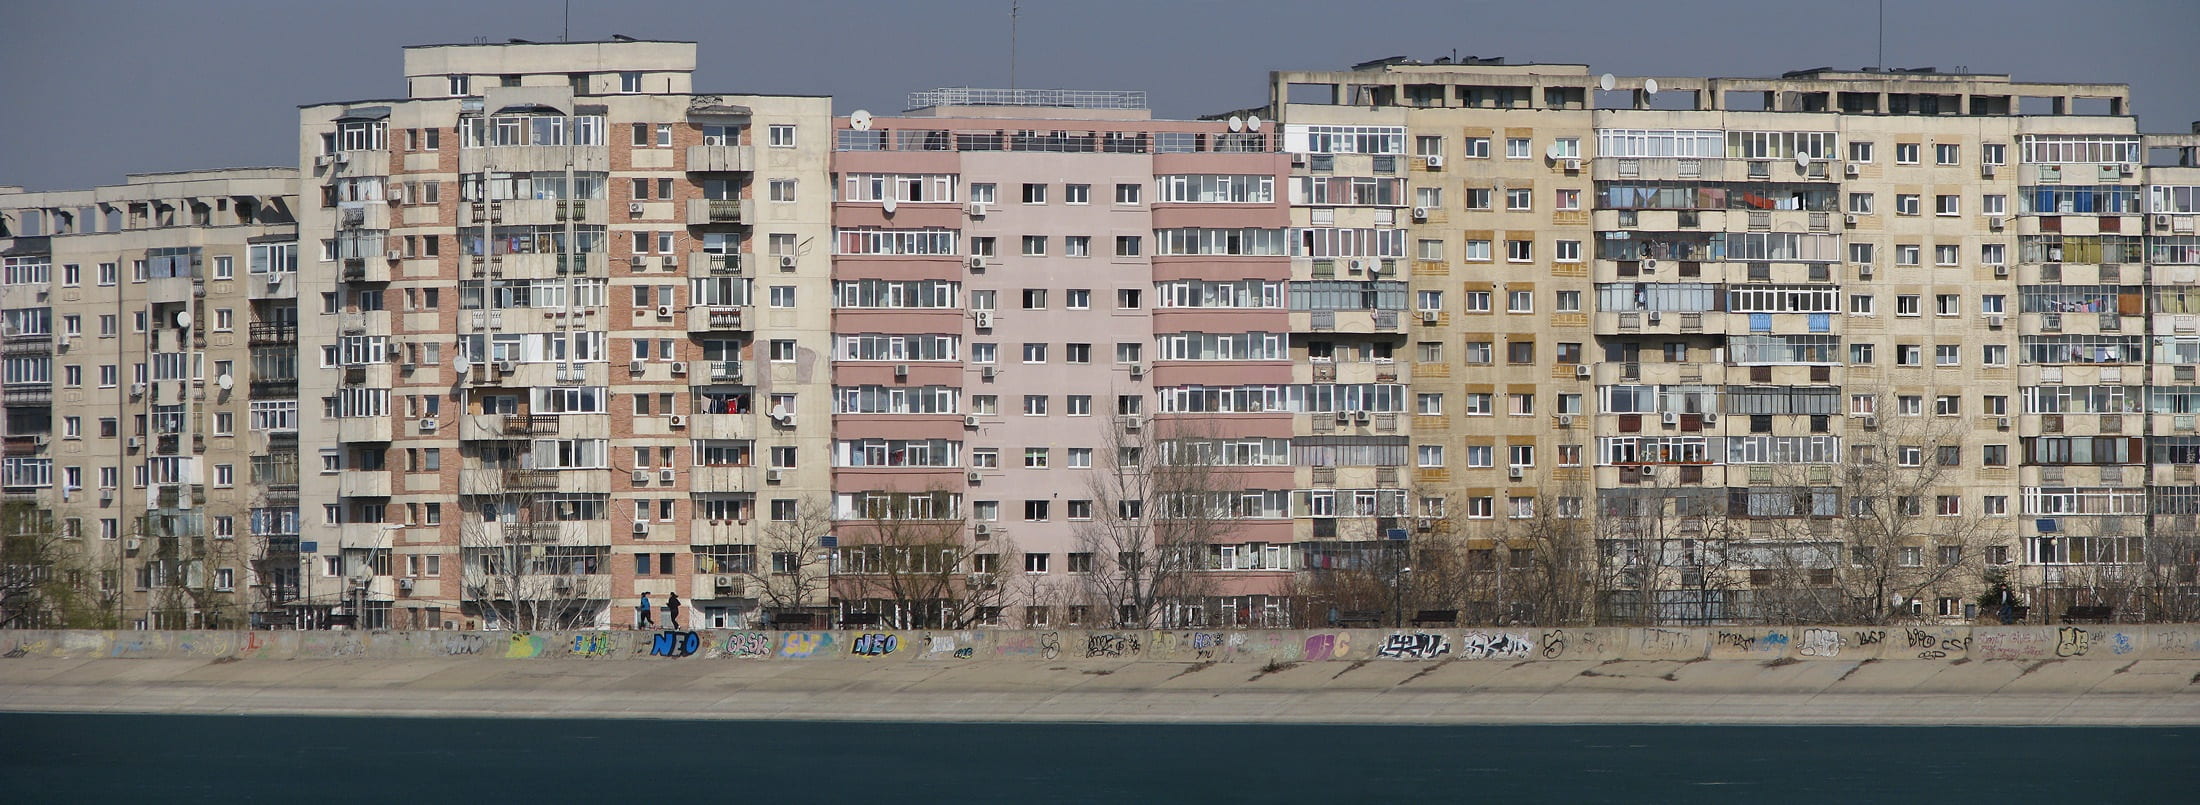 Blocuri de locuințe tipice din București, România. Credit foto: Pixabay